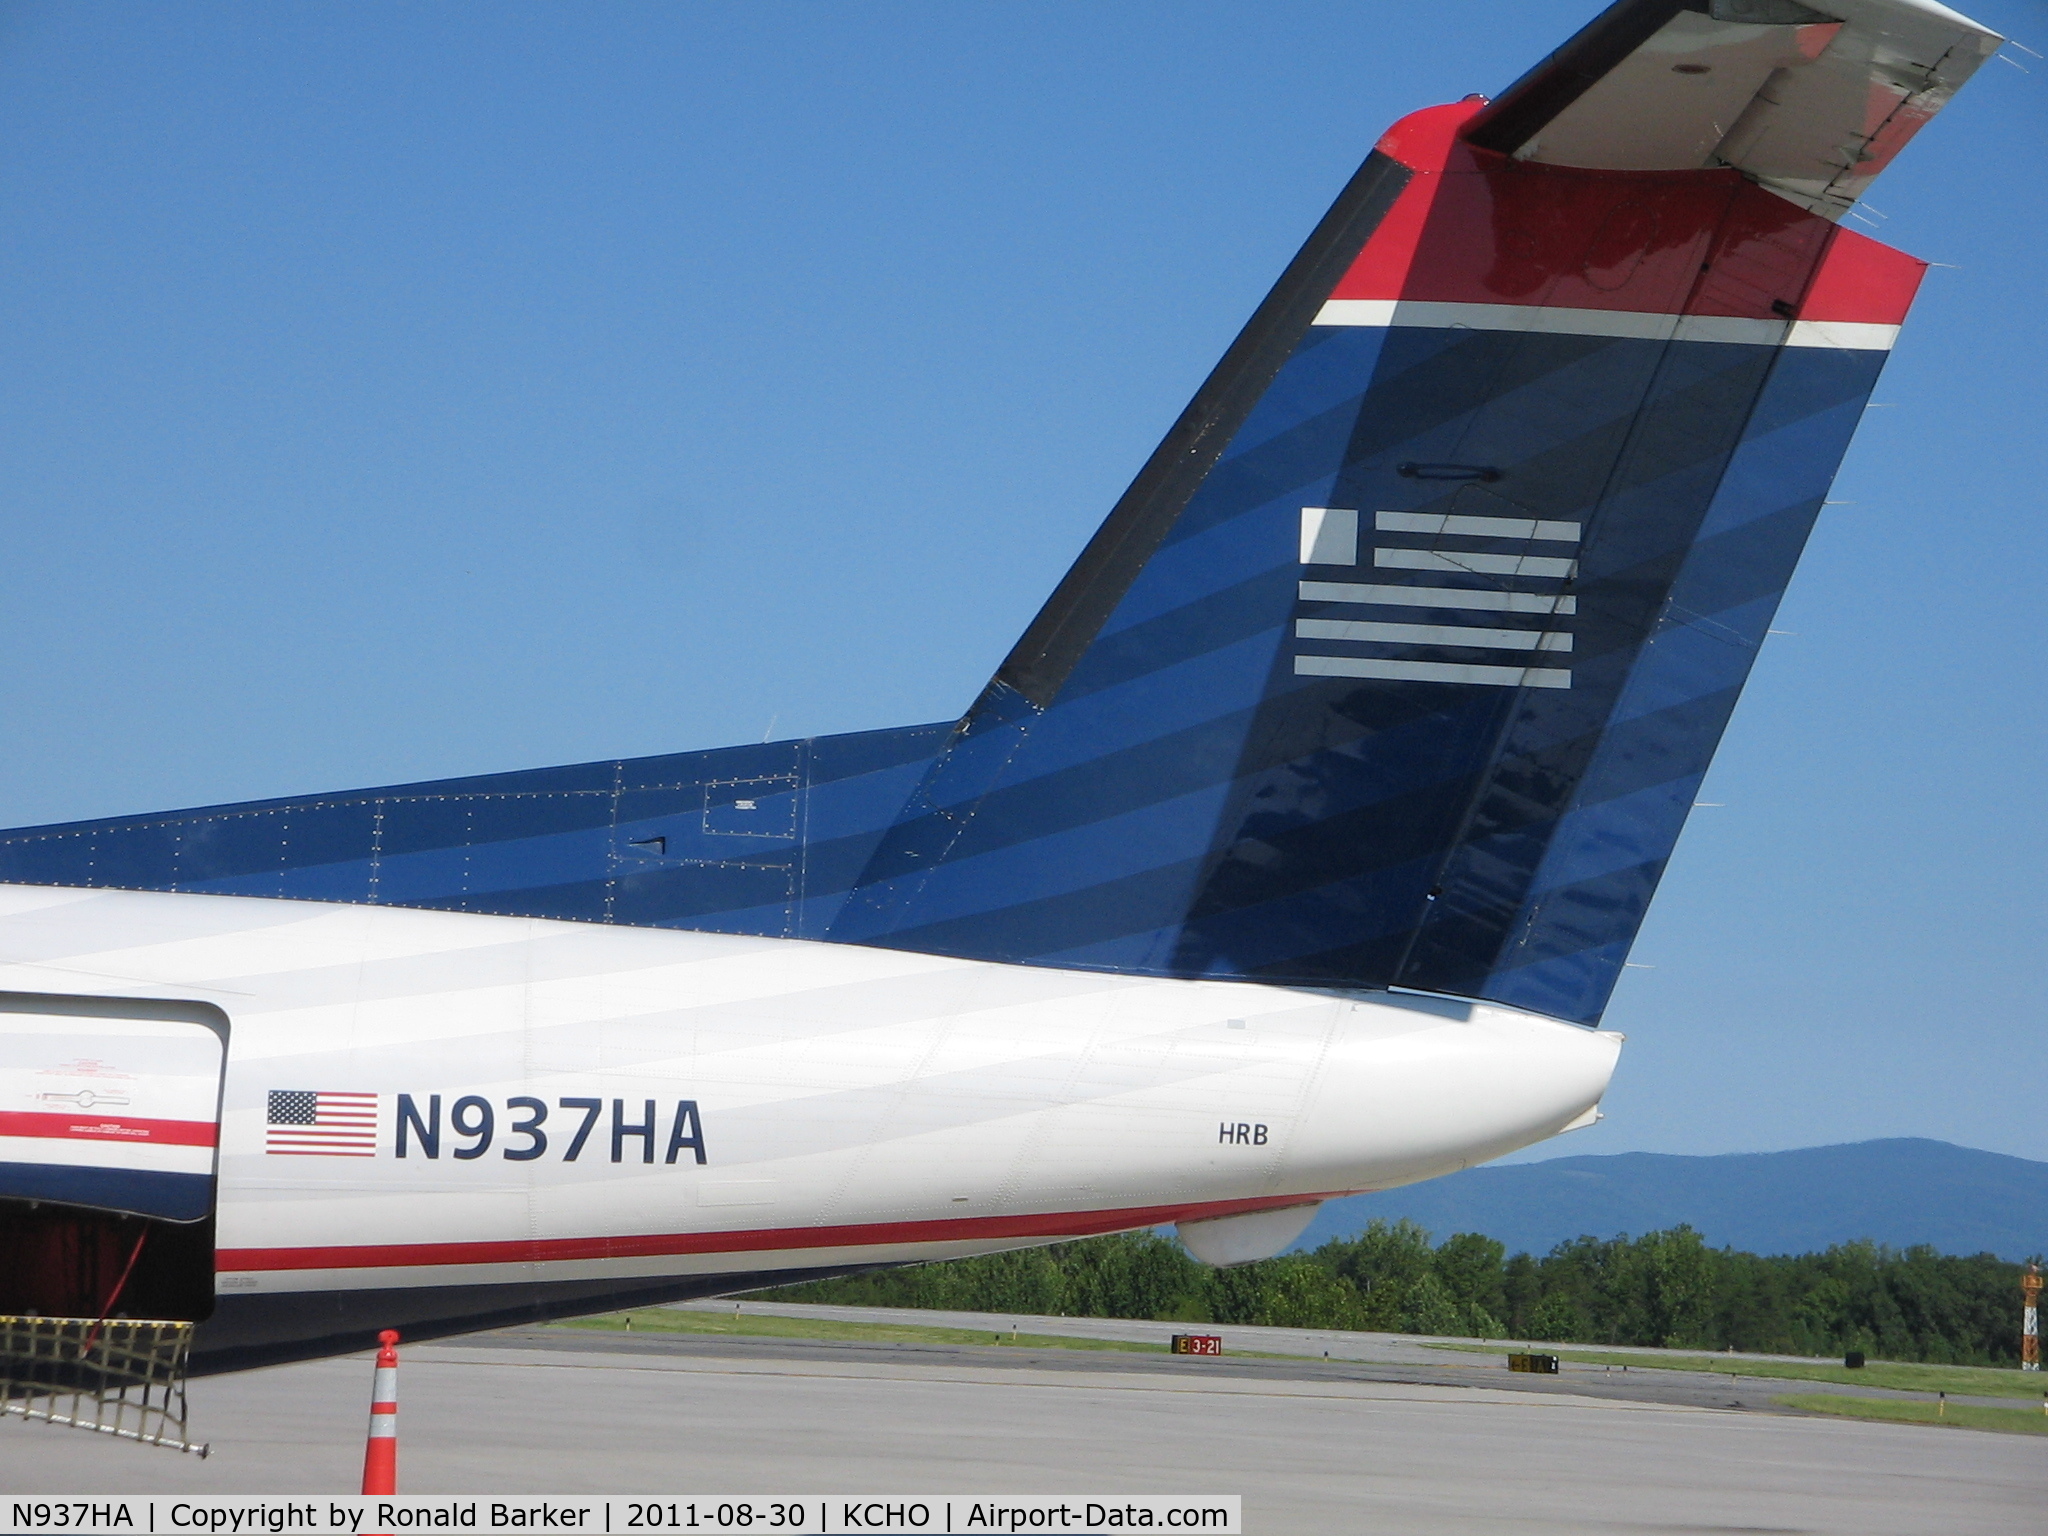 N937HA, Boeing DHC-8-102 C/N 148, CHO, VA